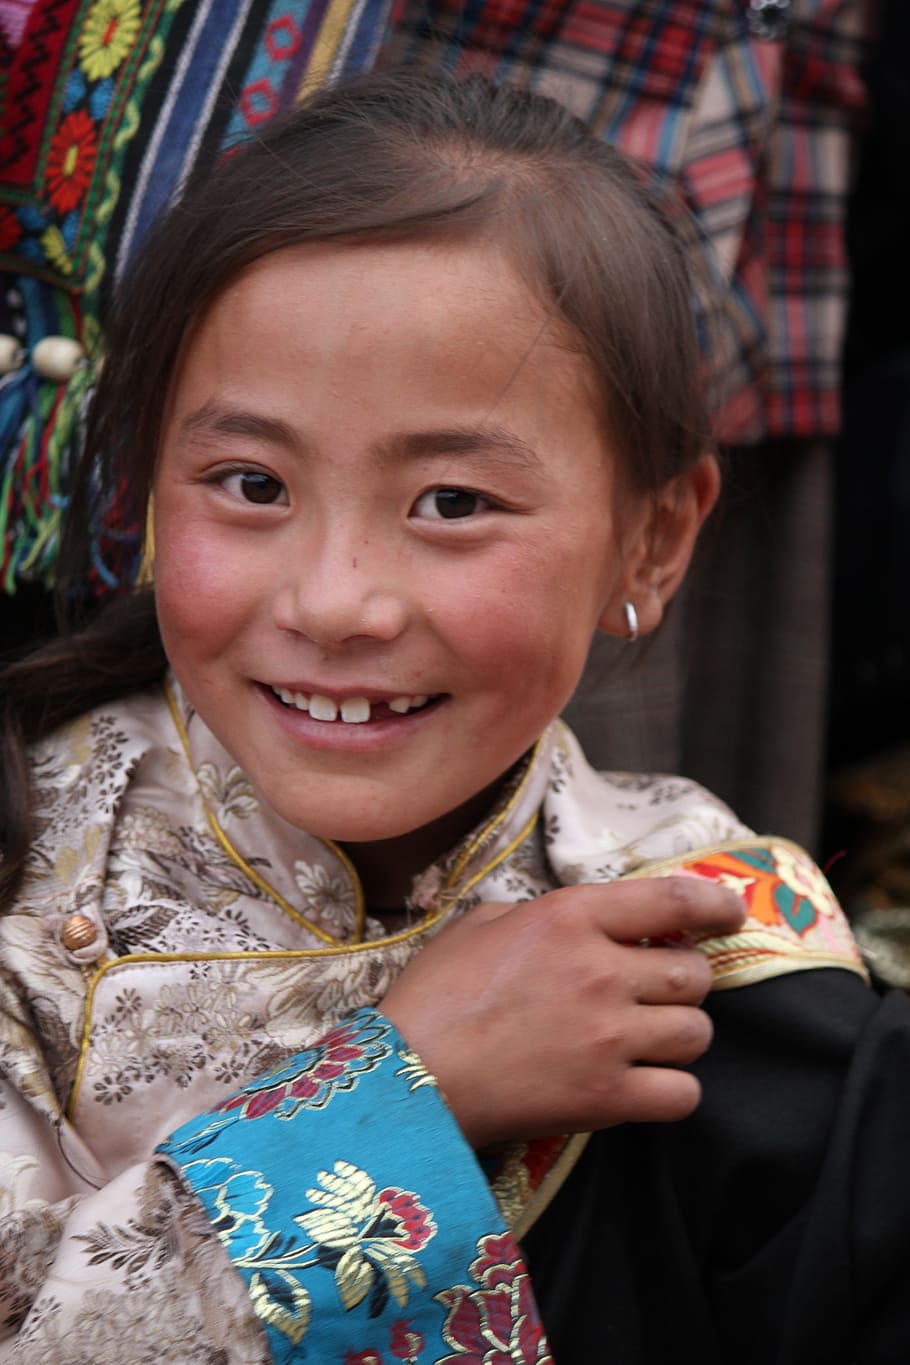 キャラクター, チベット民族, 女の子, 子供, 子供時代, 実在の人物, 一人, ポートレート, カメラ目線, ライフスタイル